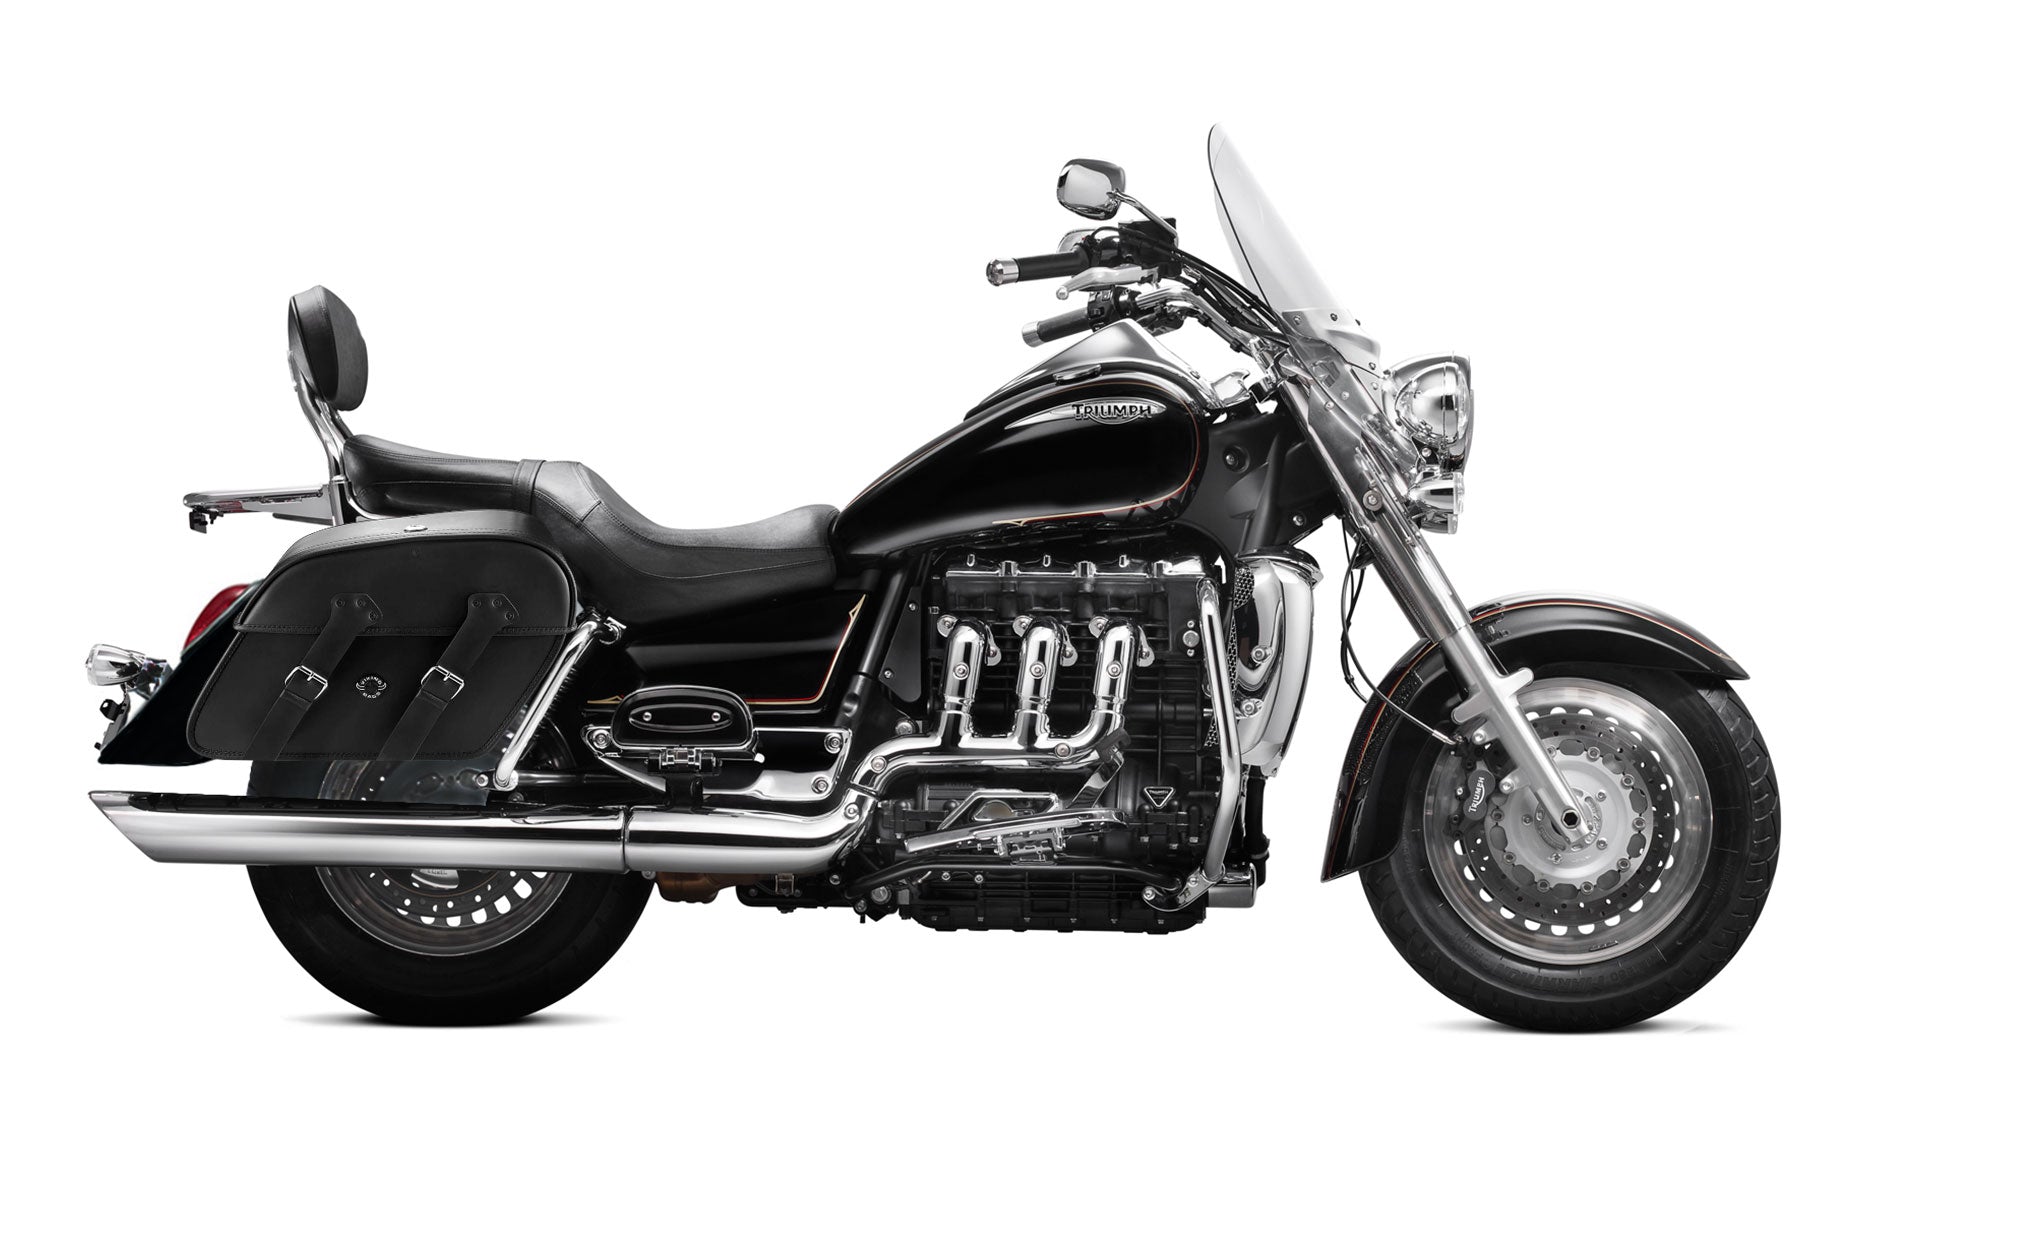 Viking Raven Extra Large Triumph Rocket Iii Touring Leather Motorcycle Saddlebags on Bike Photo @expand